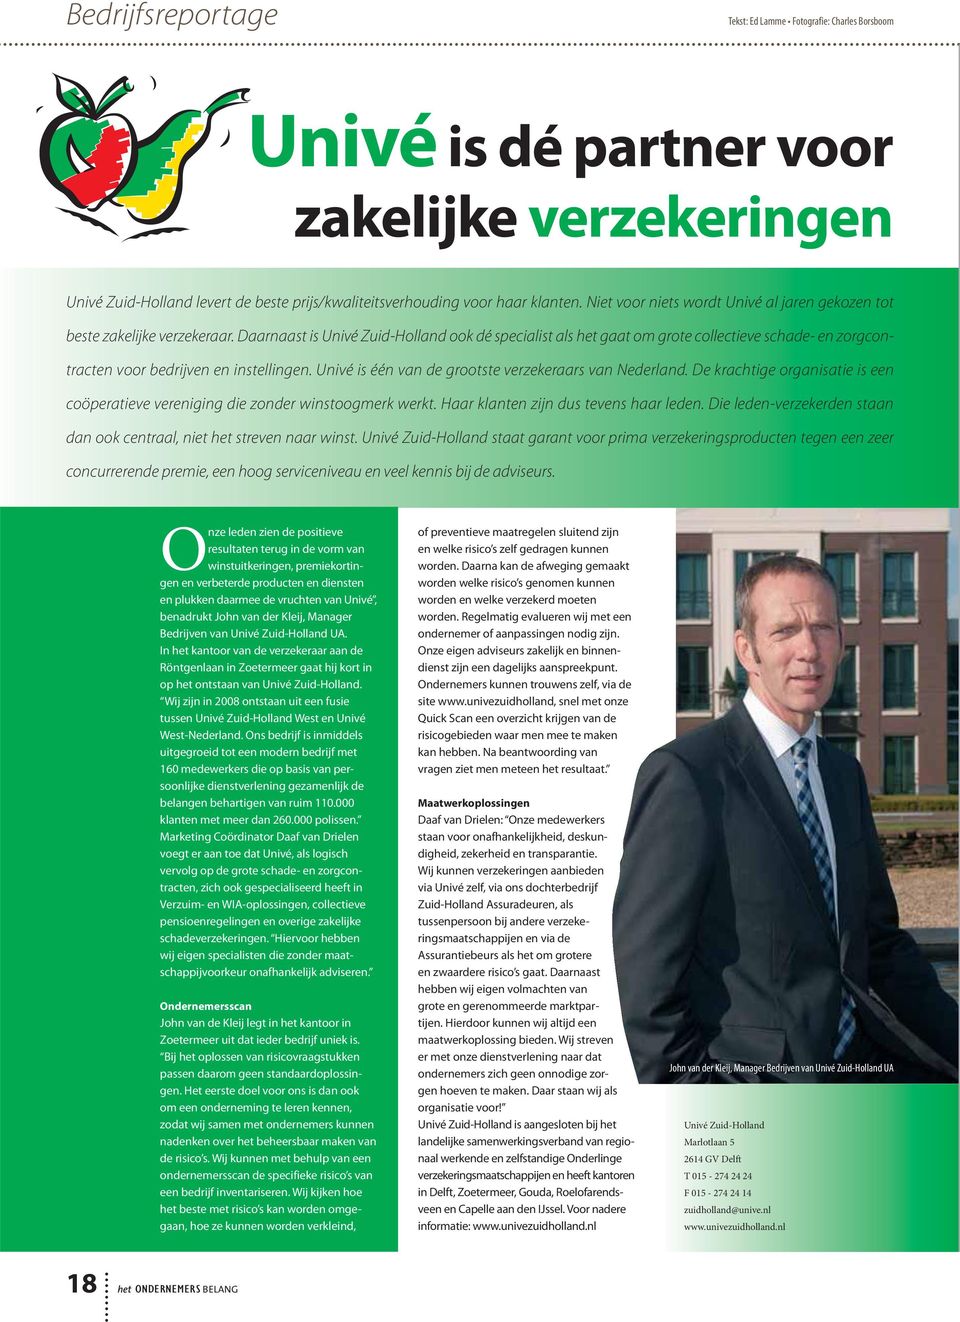 Daarnaast is Univé Zuid-Holland ook dé specialist als het gaat om grote collectieve schade- en zorgcontracten voor bedrijven en instellingen. Univé is één van de grootste verzekeraars van Nederland.